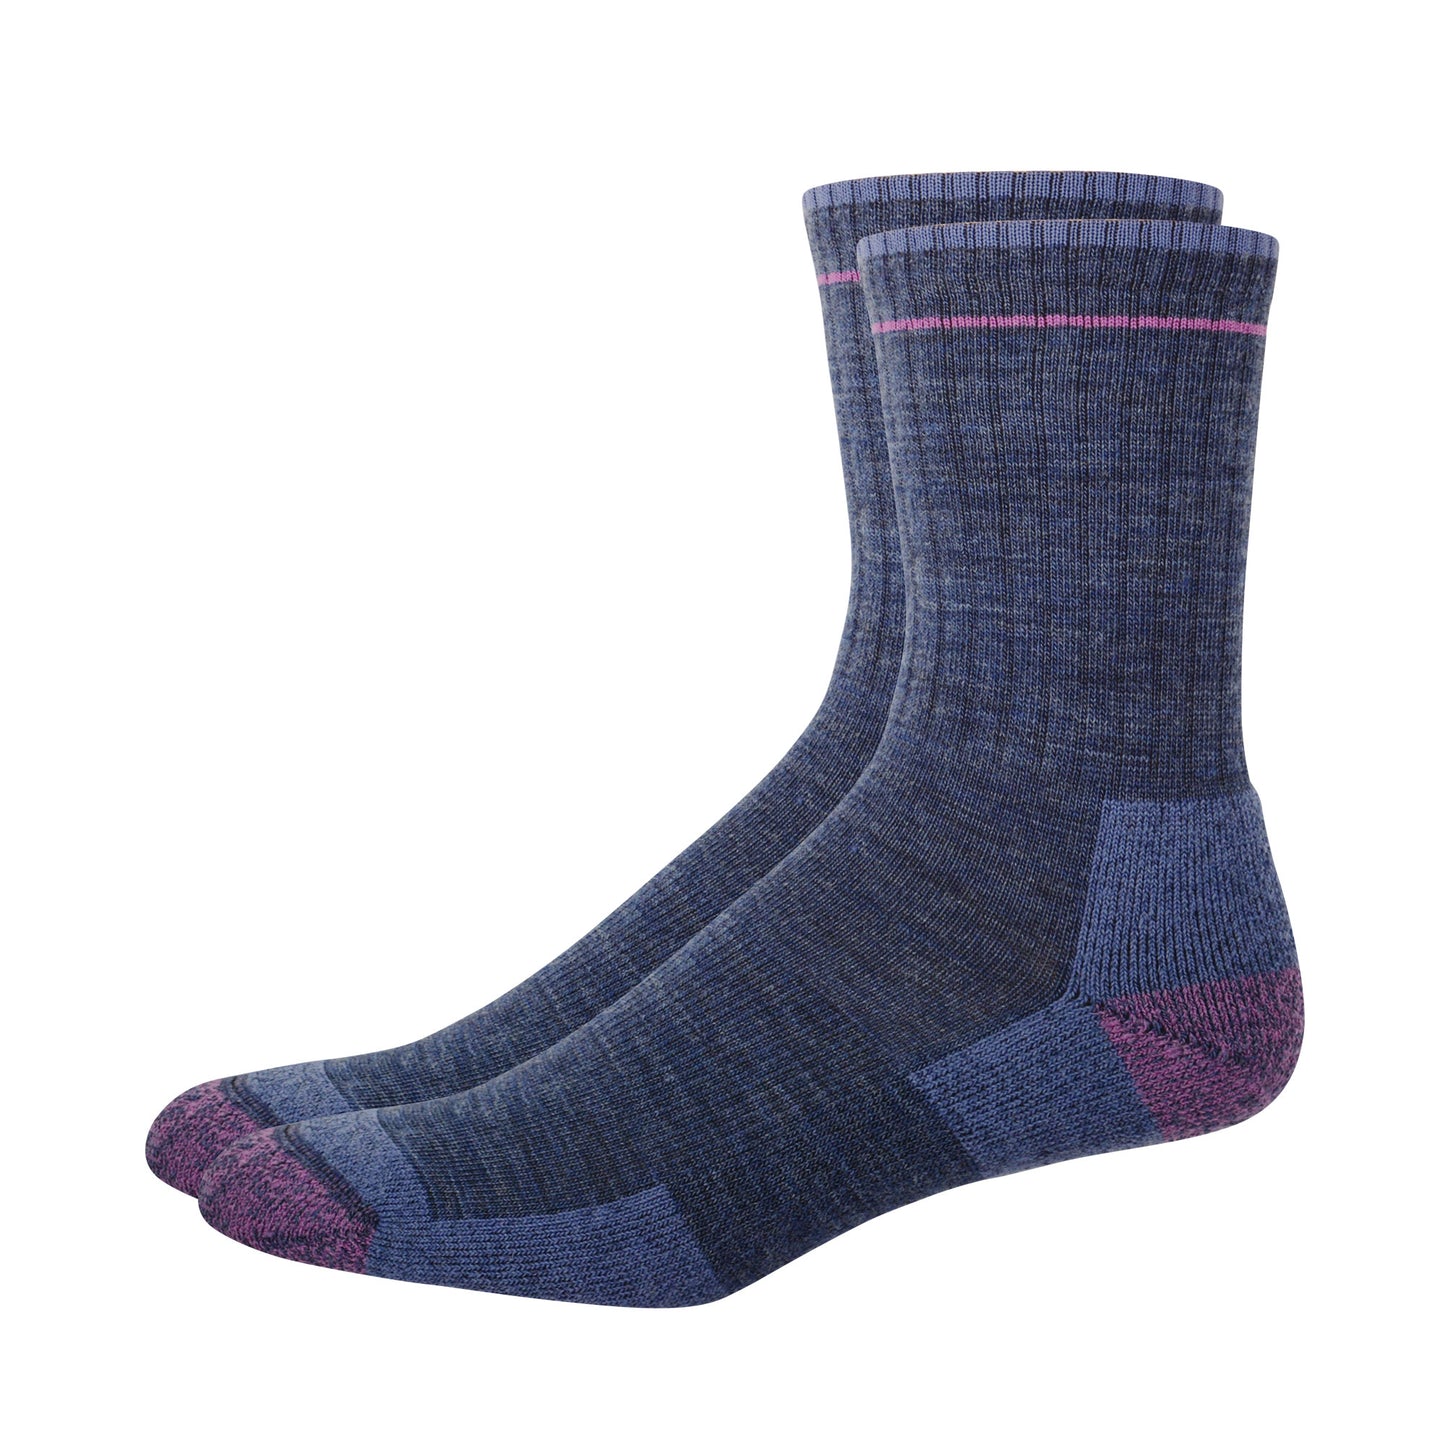 Pair of purple merino wool socks. 